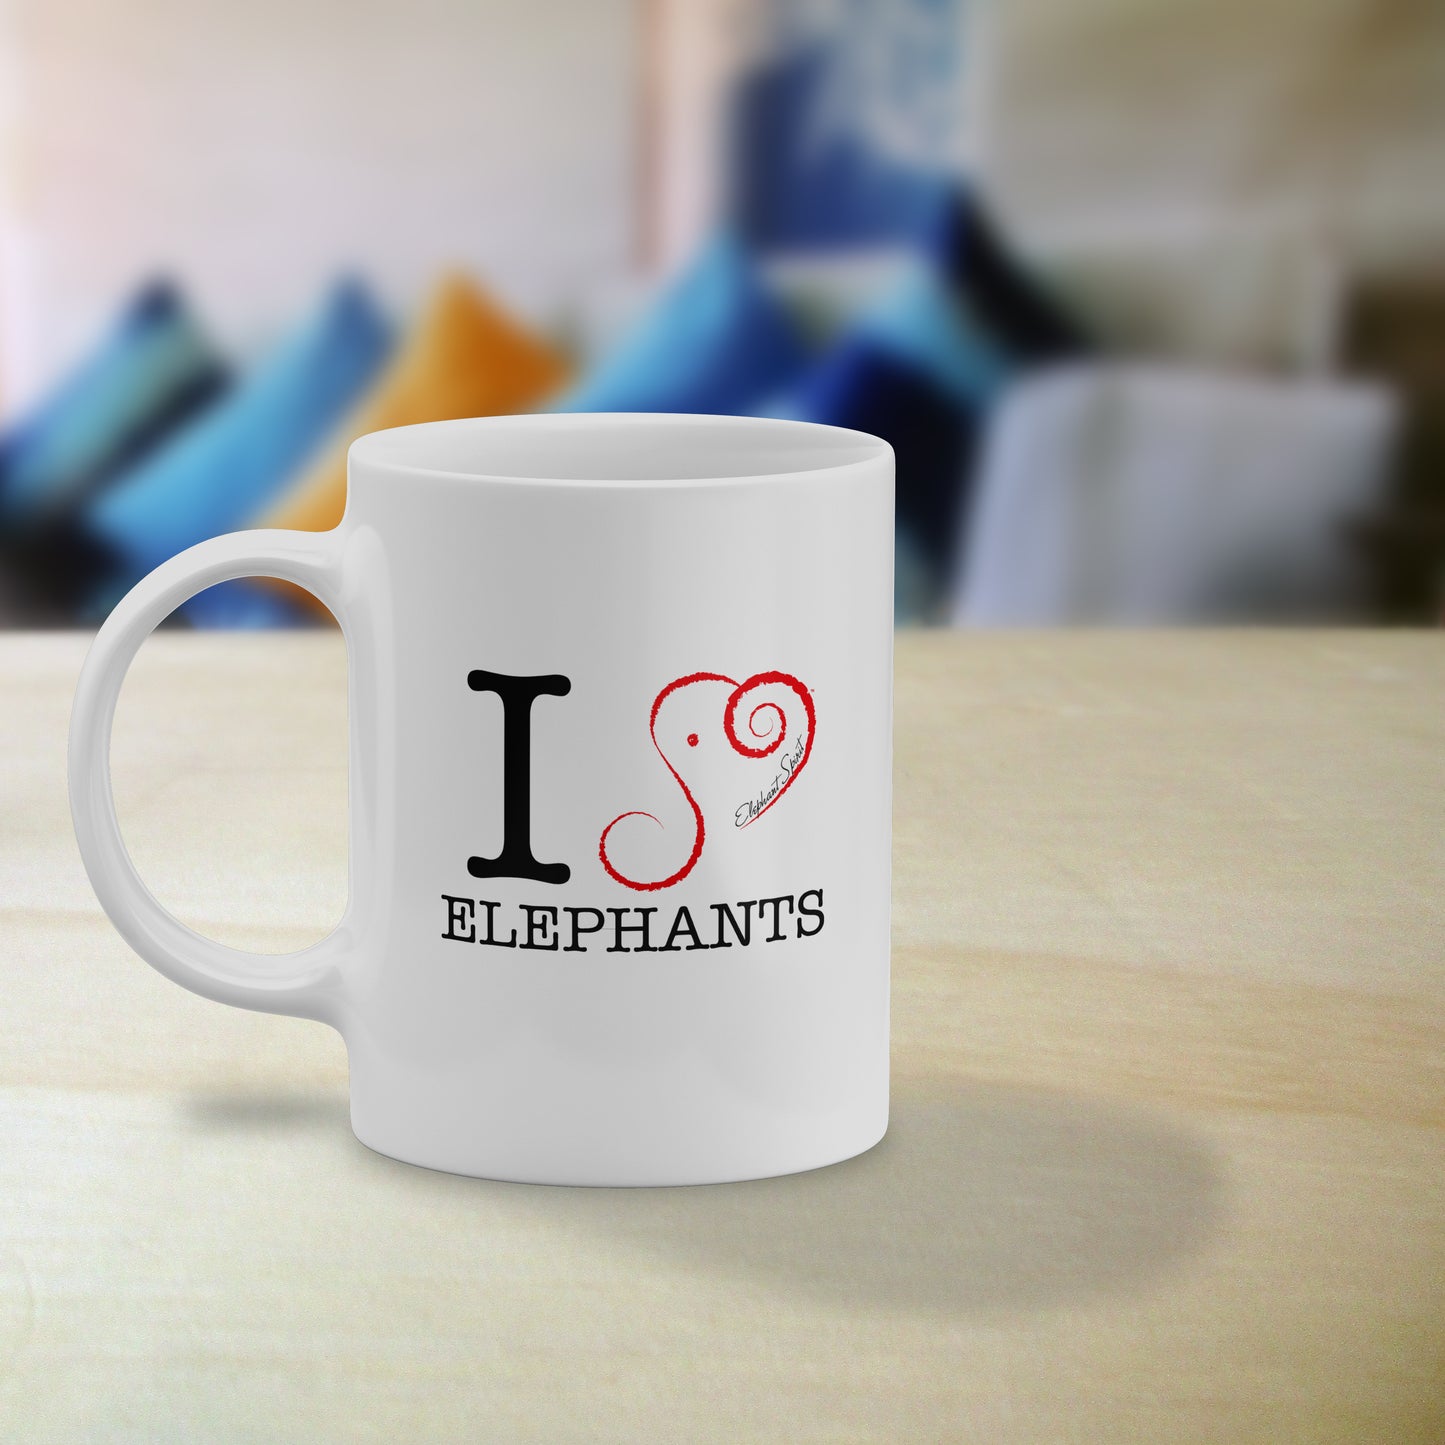 Elephant Coffee Mug - I 'Heart" Elephants